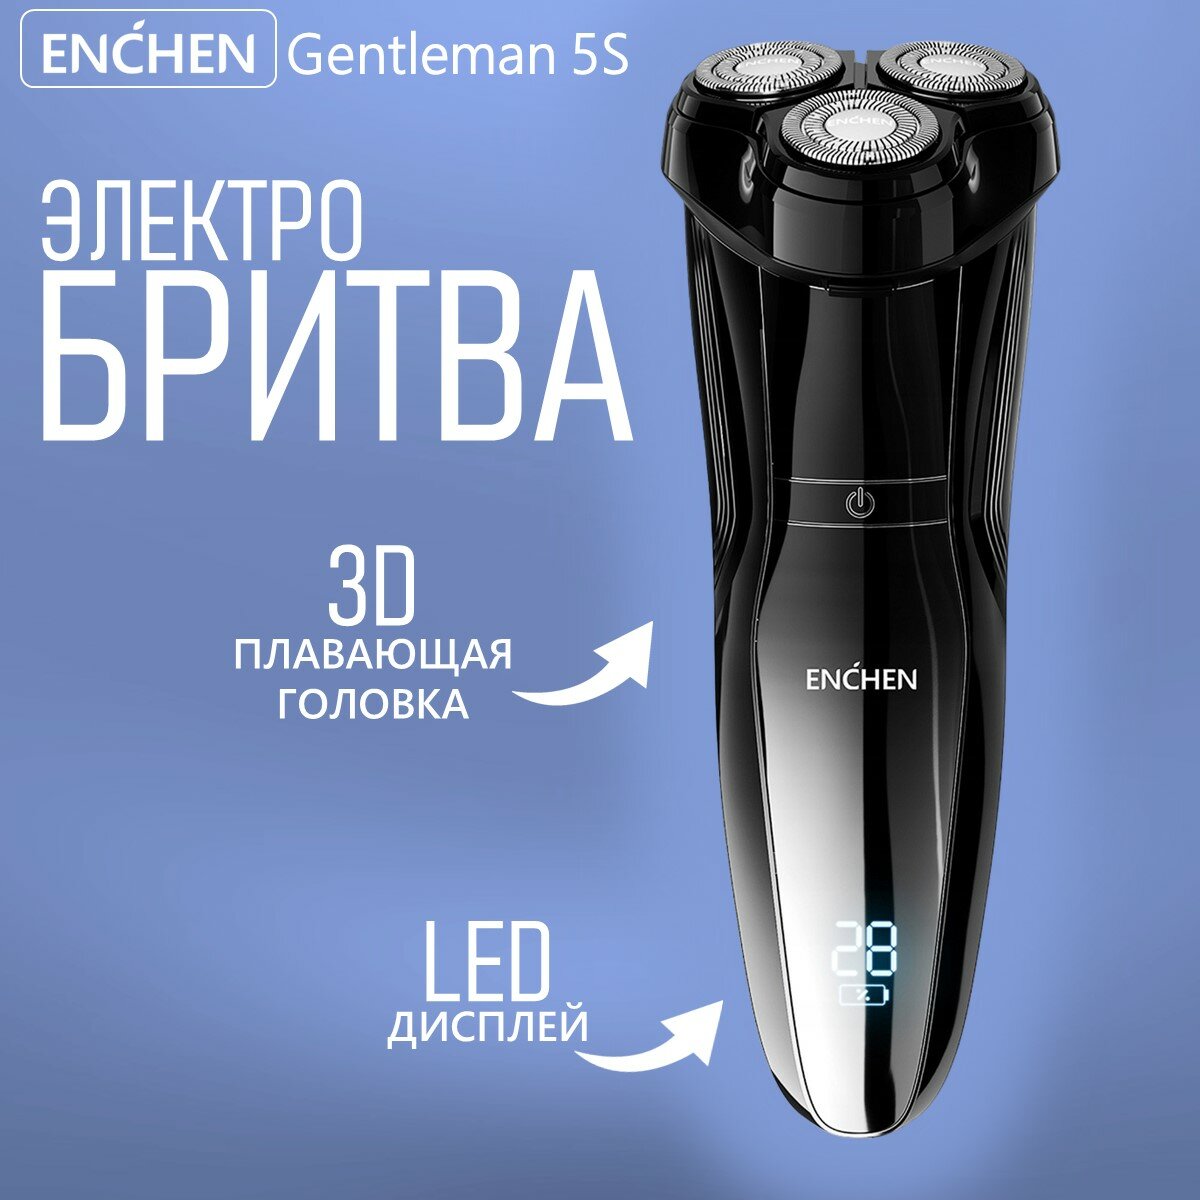 Электробритва Enchen Gentleman 5S (Black) / Водонепроницаемая электрическая бритва для мужчин для сухого и влажного бритья, триммер, черная